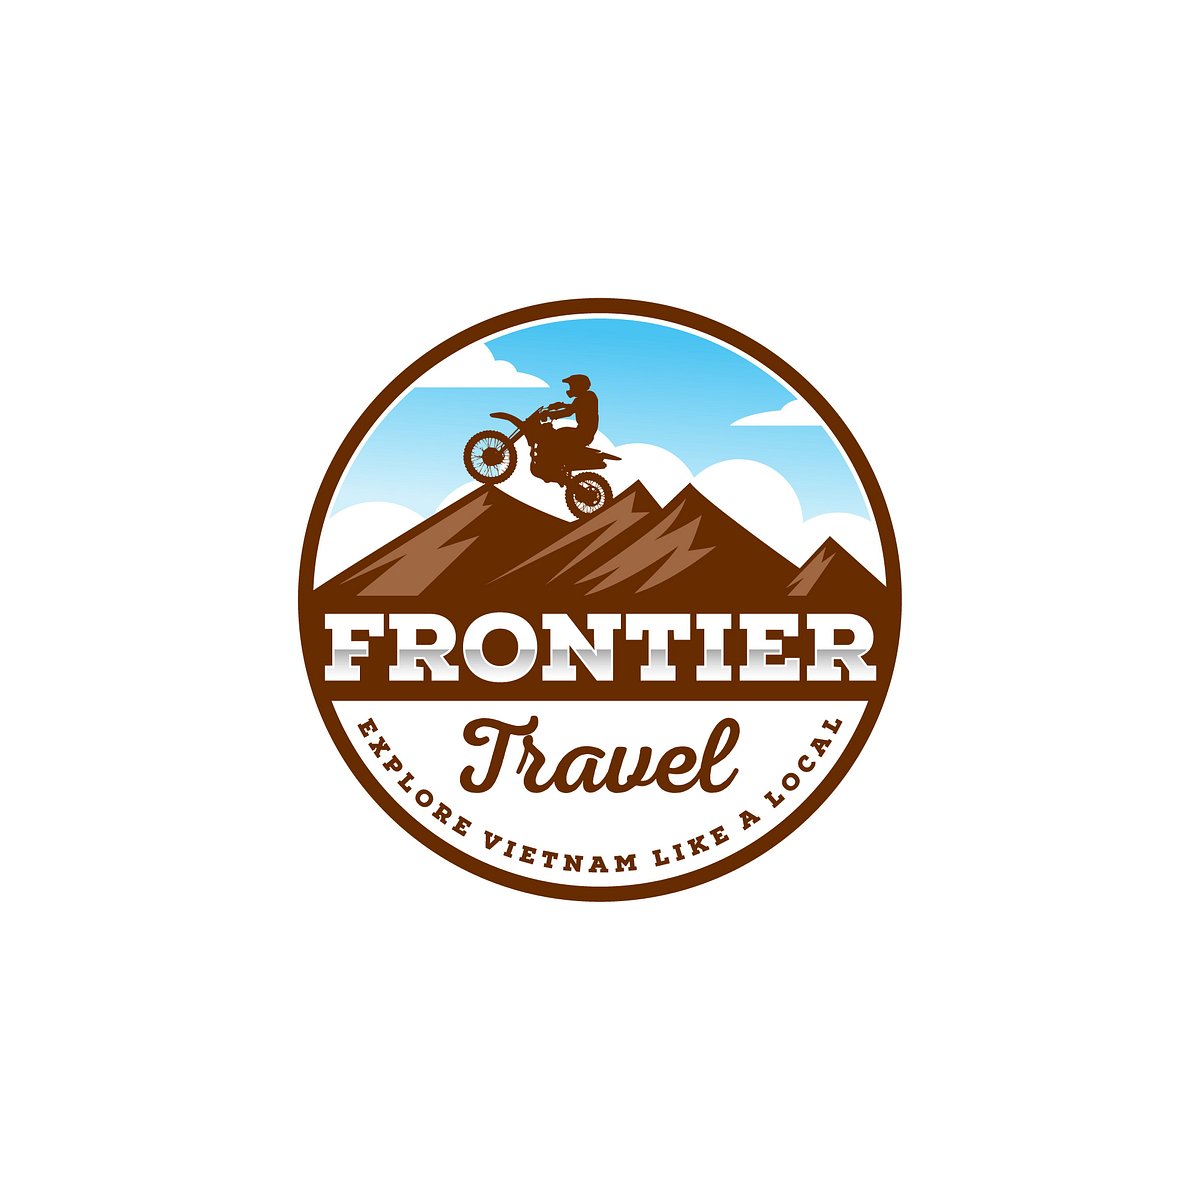 Frontiers Travel